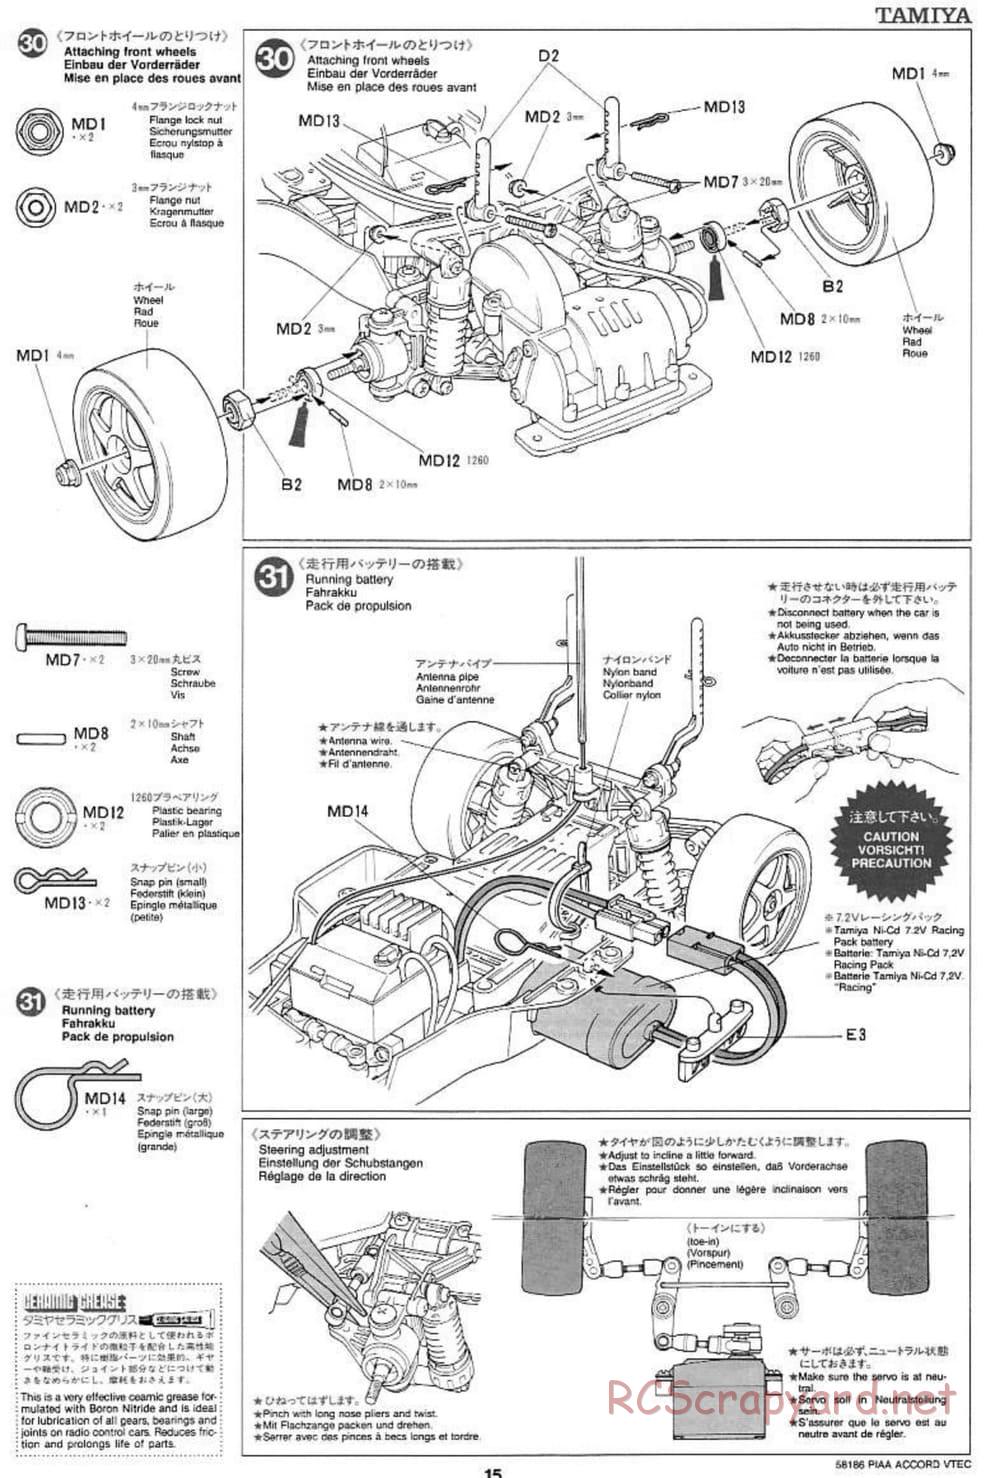 Tamiya - PIAA Accord VTEC - FF-01 Chassis - Manual - Page 15